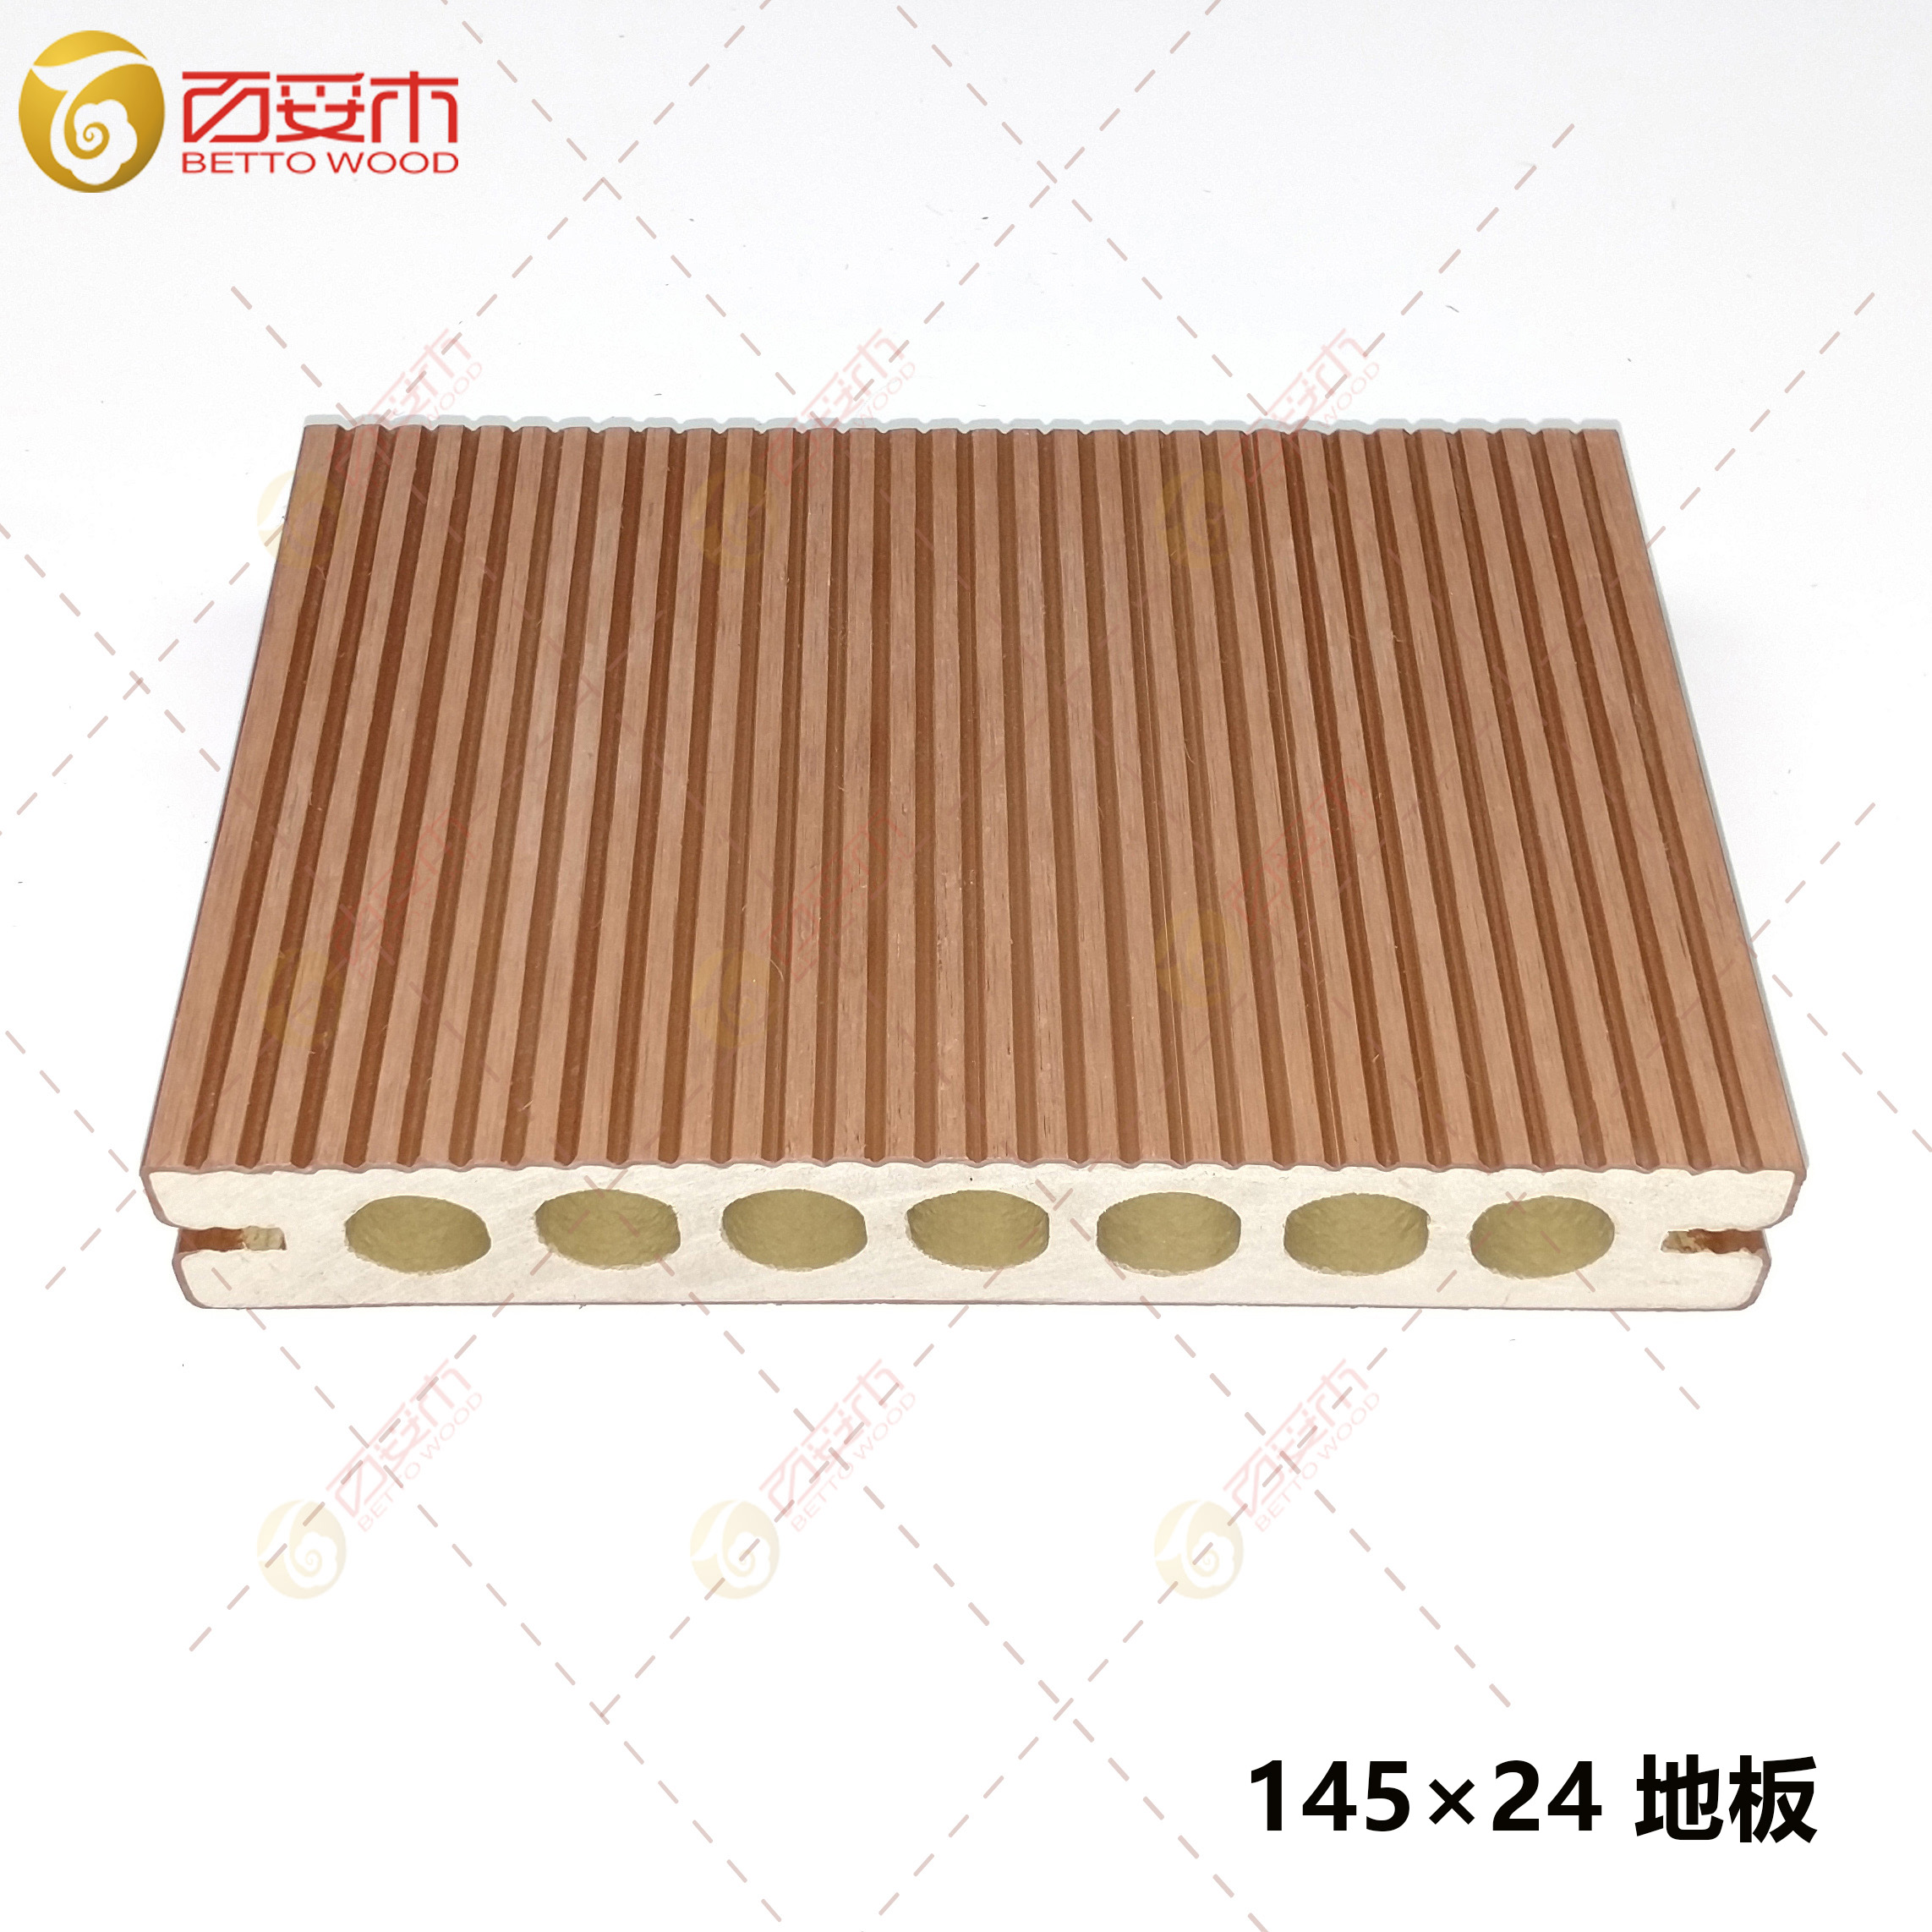 145×24塑木圆孔地板3